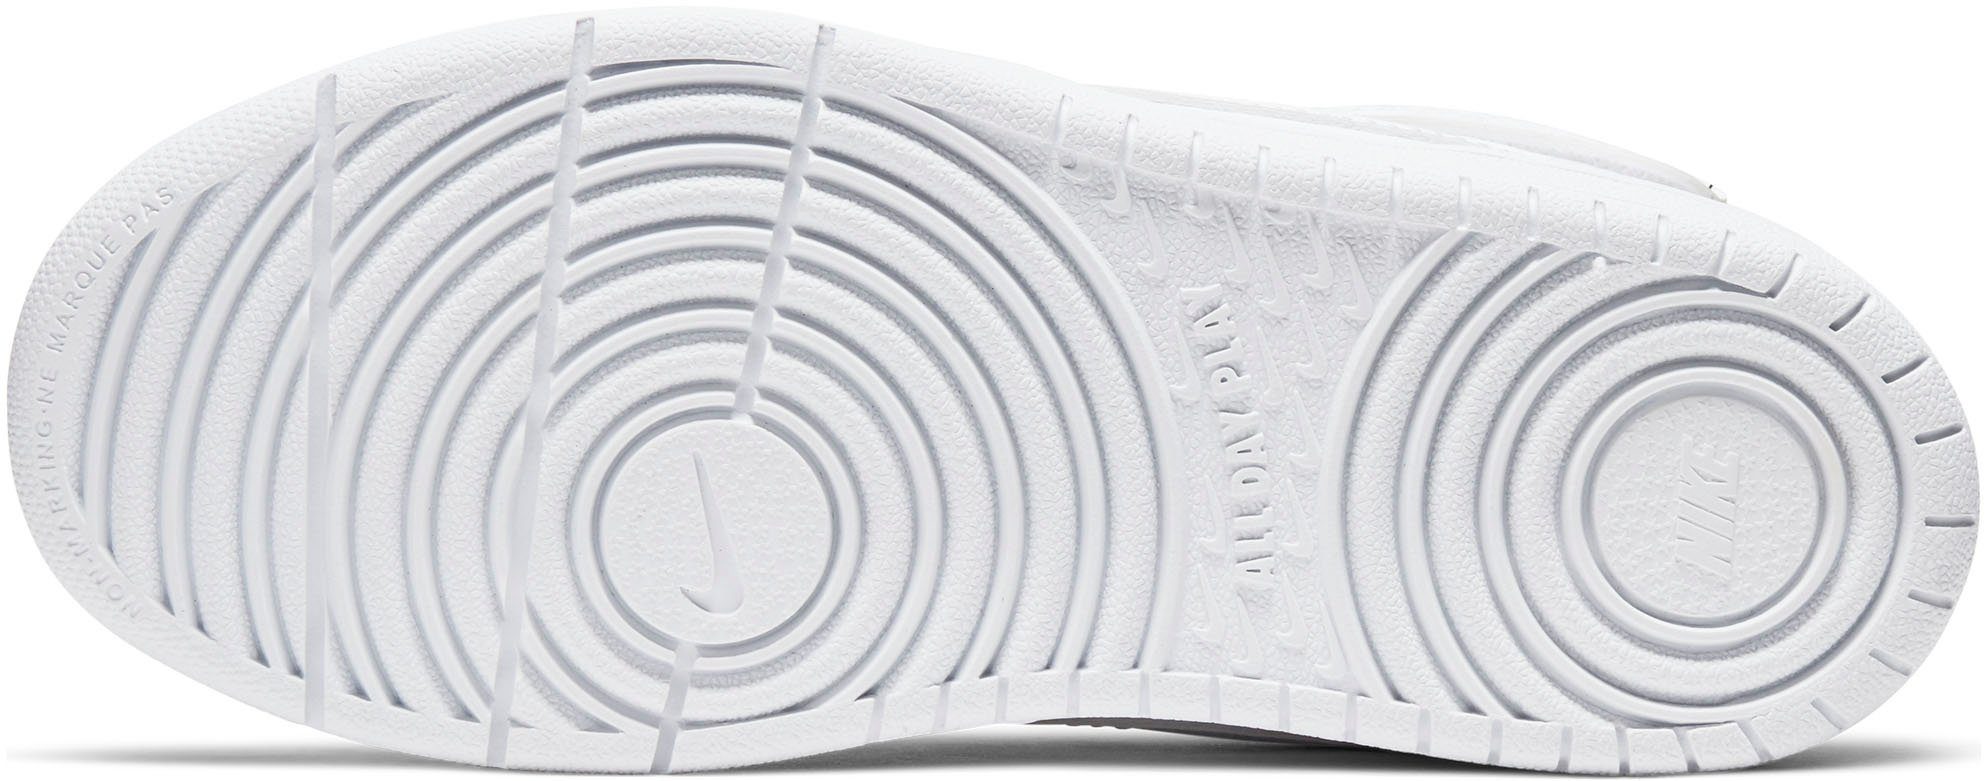 Spuren 2 Nike Sneaker Design Air MID Force Sportswear BOROUGH des COURT den 1 auf